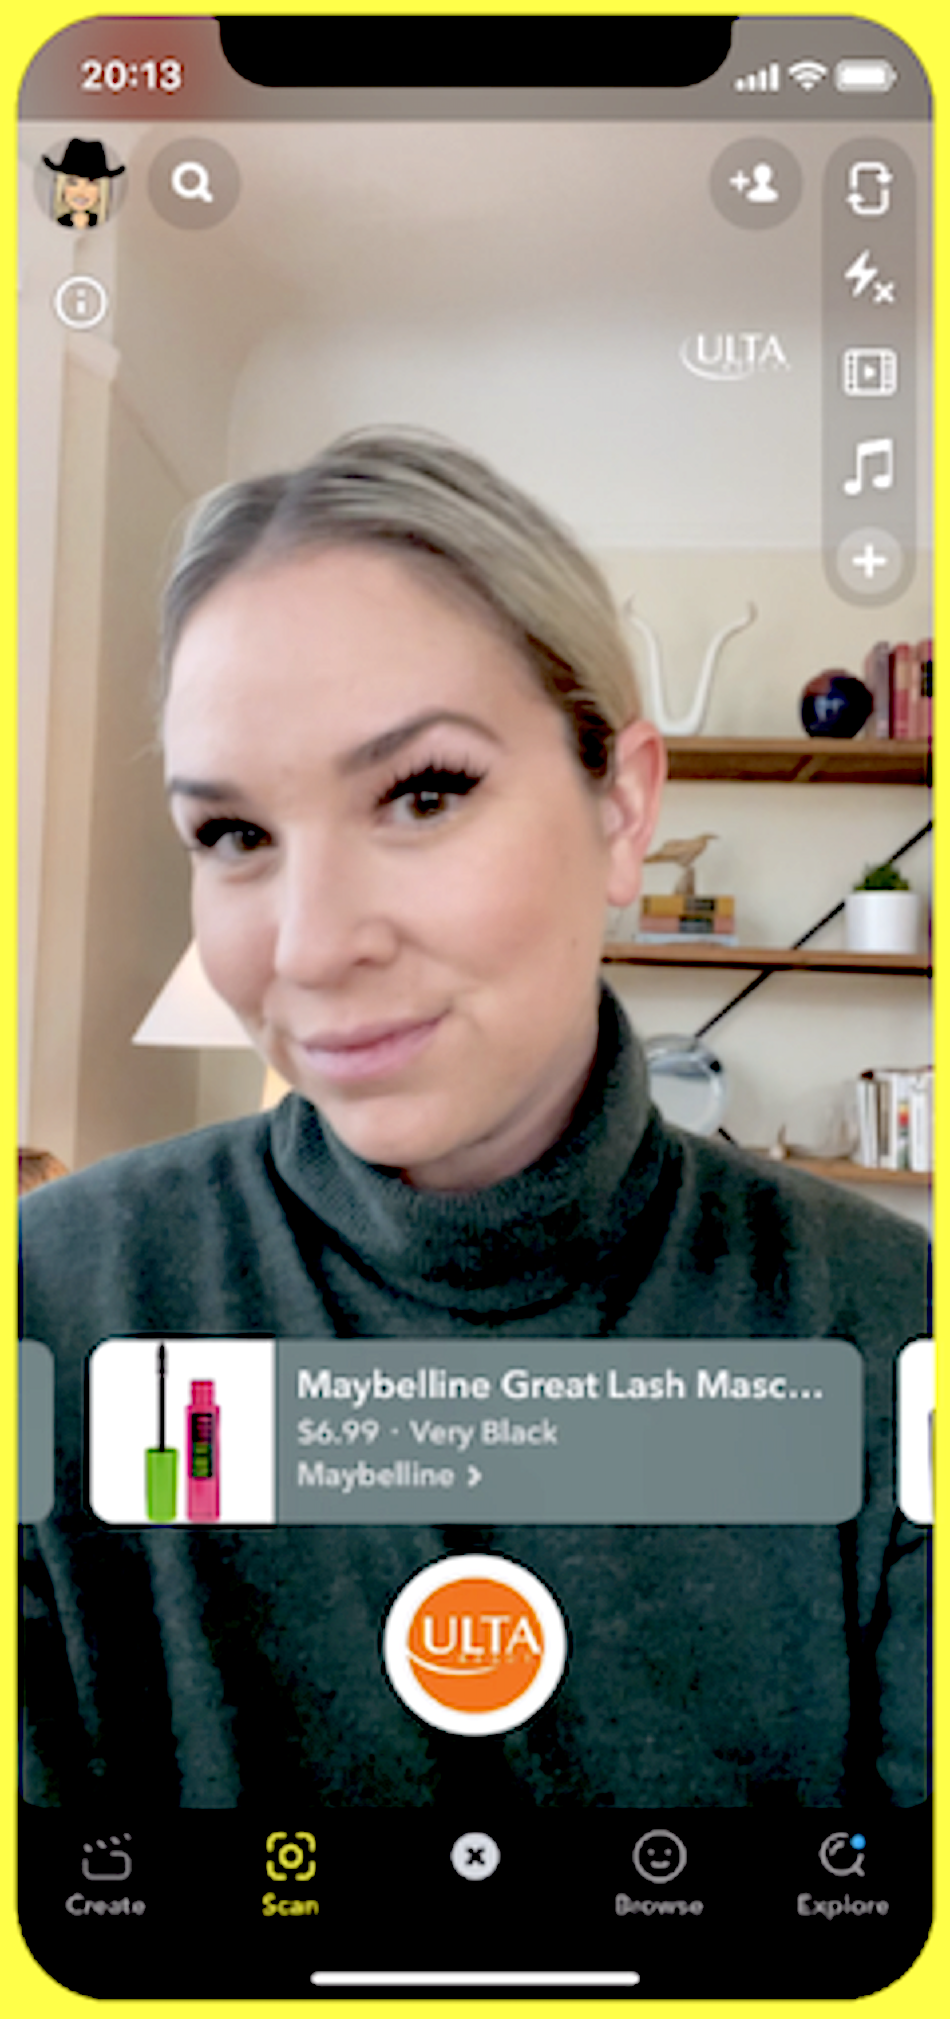 在 Snapchat 上，歐萊雅透過擴增實境功能展示了用戶虛擬試用睫毛膏的情況。